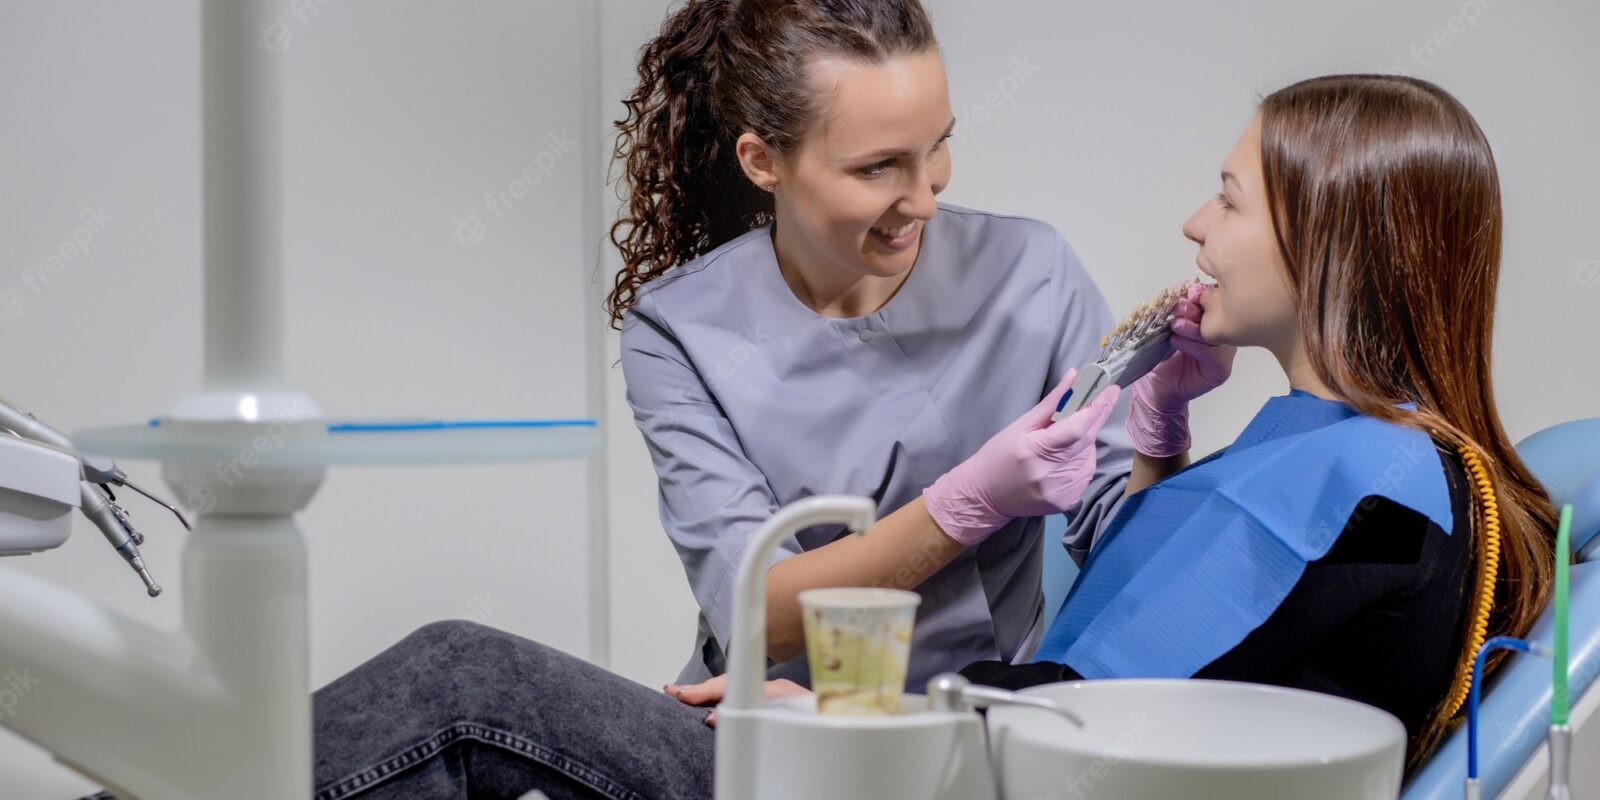 dental check up